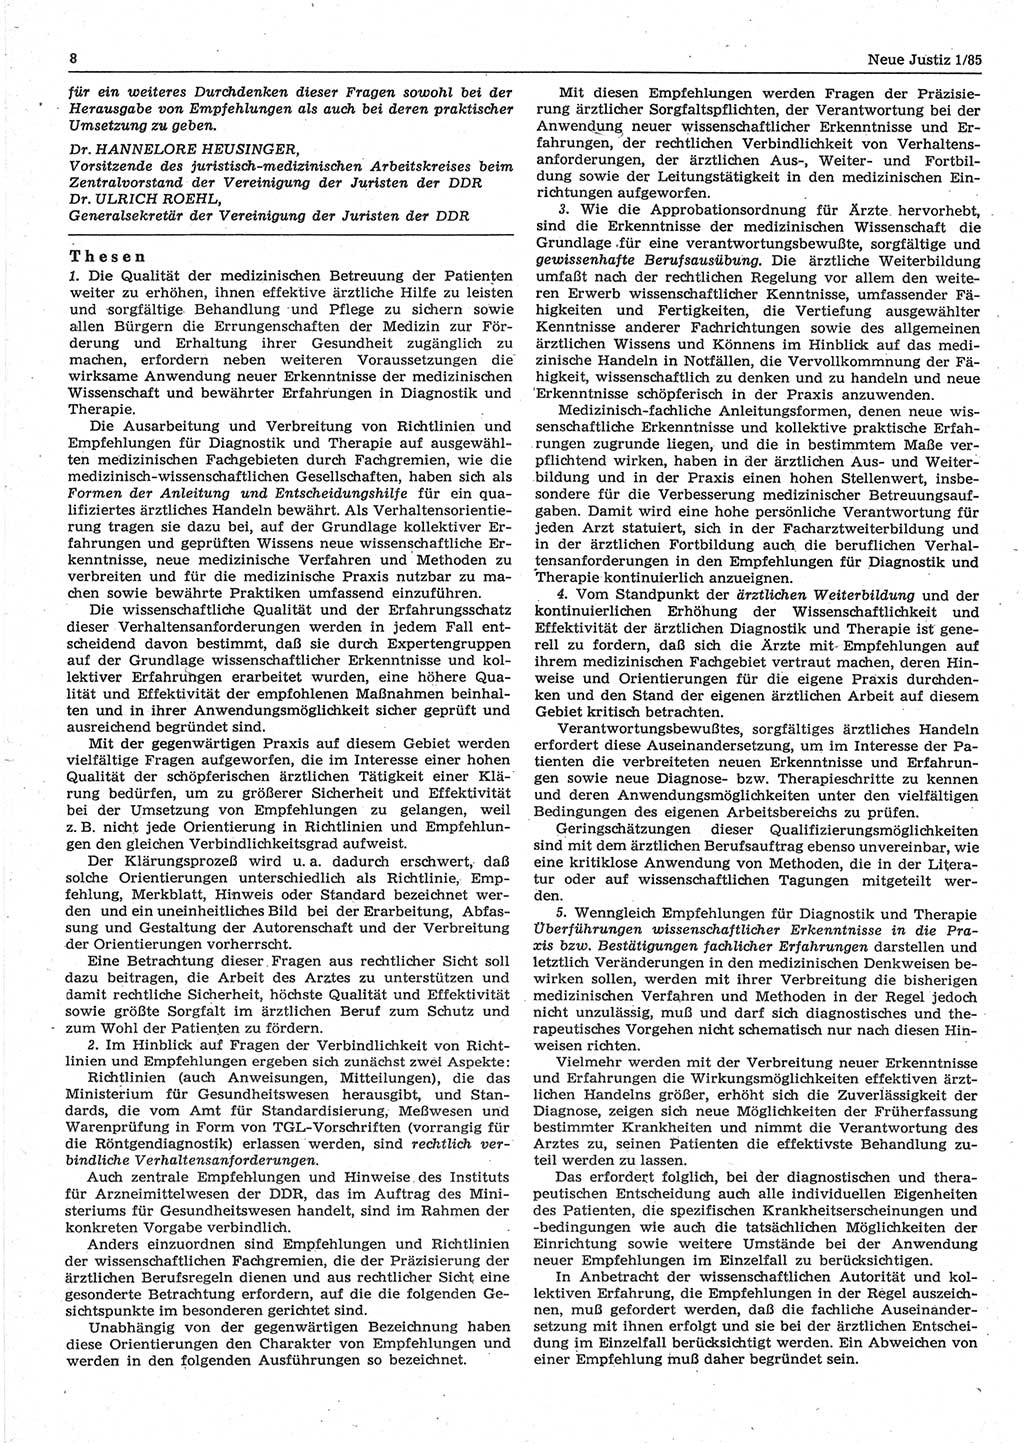 Neue Justiz (NJ), Zeitschrift für sozialistisches Recht und Gesetzlichkeit [Deutsche Demokratische Republik (DDR)], 39. Jahrgang 1985, Seite 8 (NJ DDR 1985, S. 8)